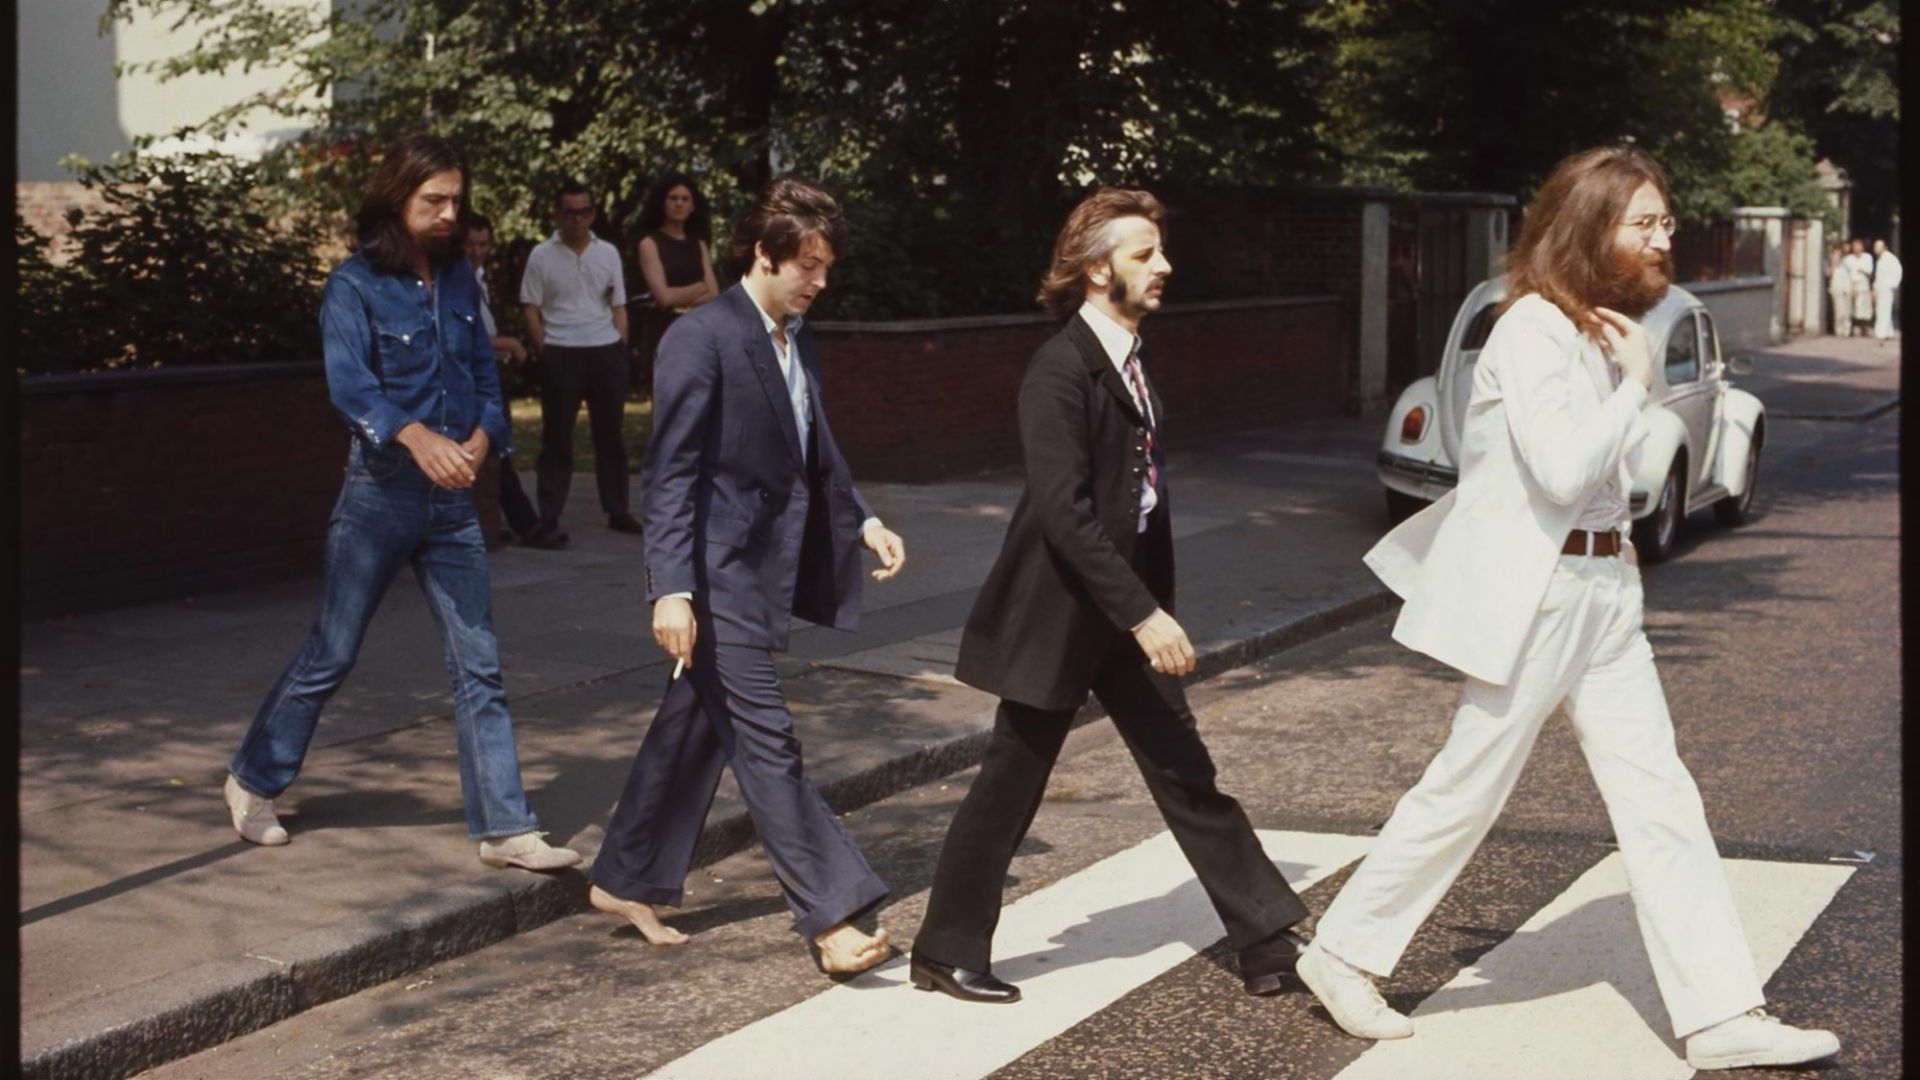 The Beatles Paul McCartney John Lennon George Harrison Ringo Starr Musician Abbey Road Crosswalk 1920x1080